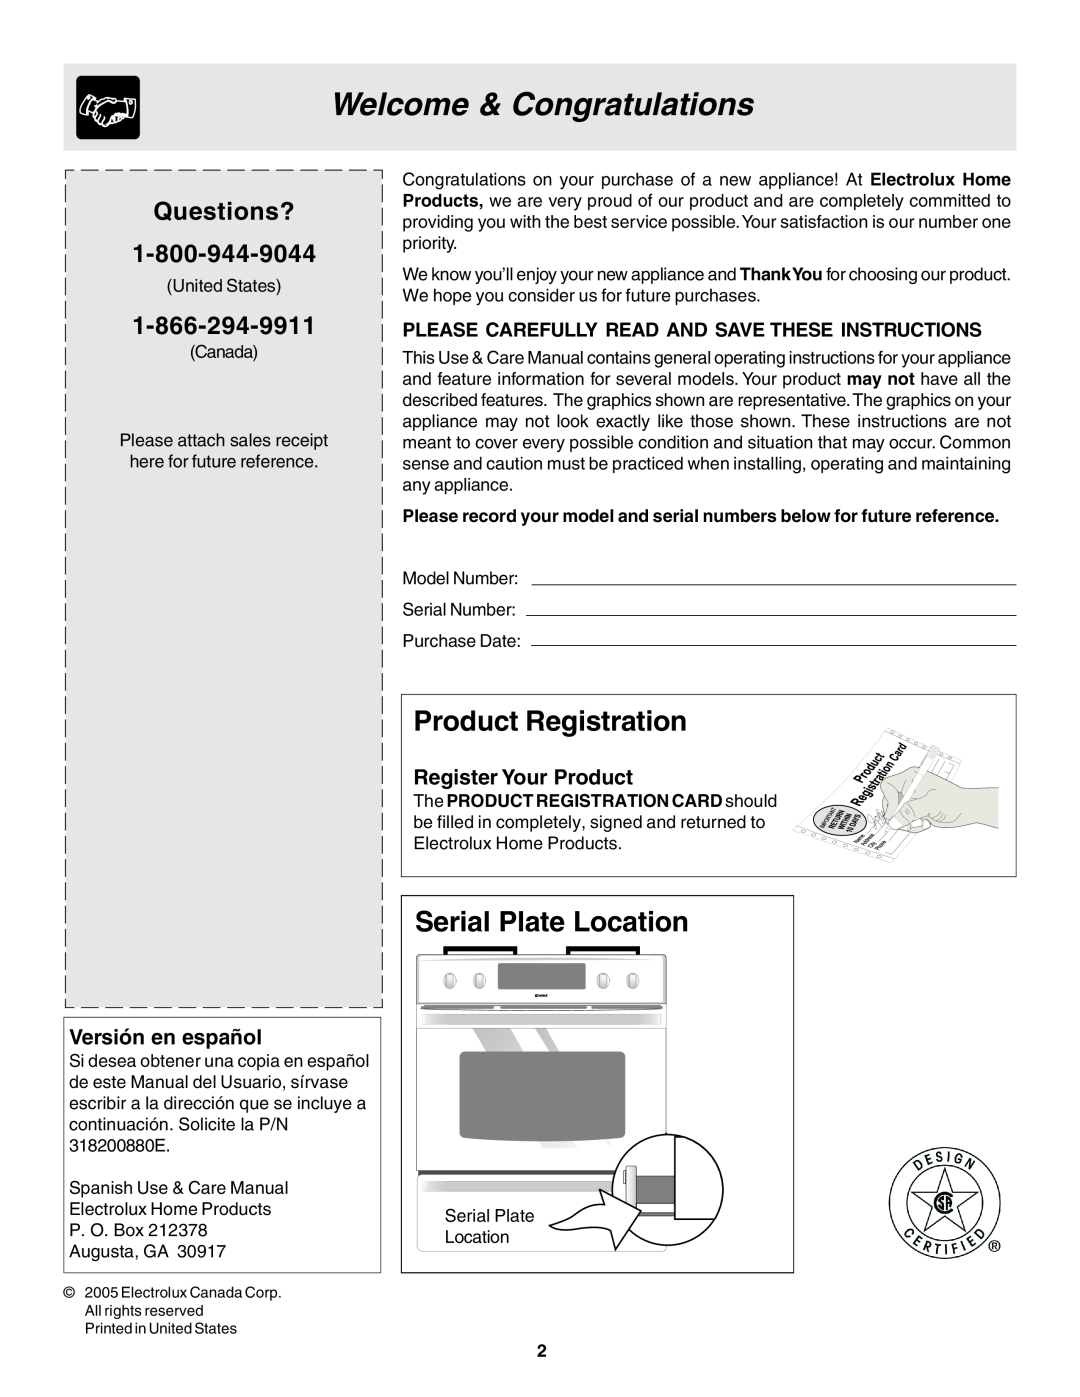 Frigidaire 318200880 manual Welcome & Congratulations, Product Registration, Serial Plate Location, Versión en español 